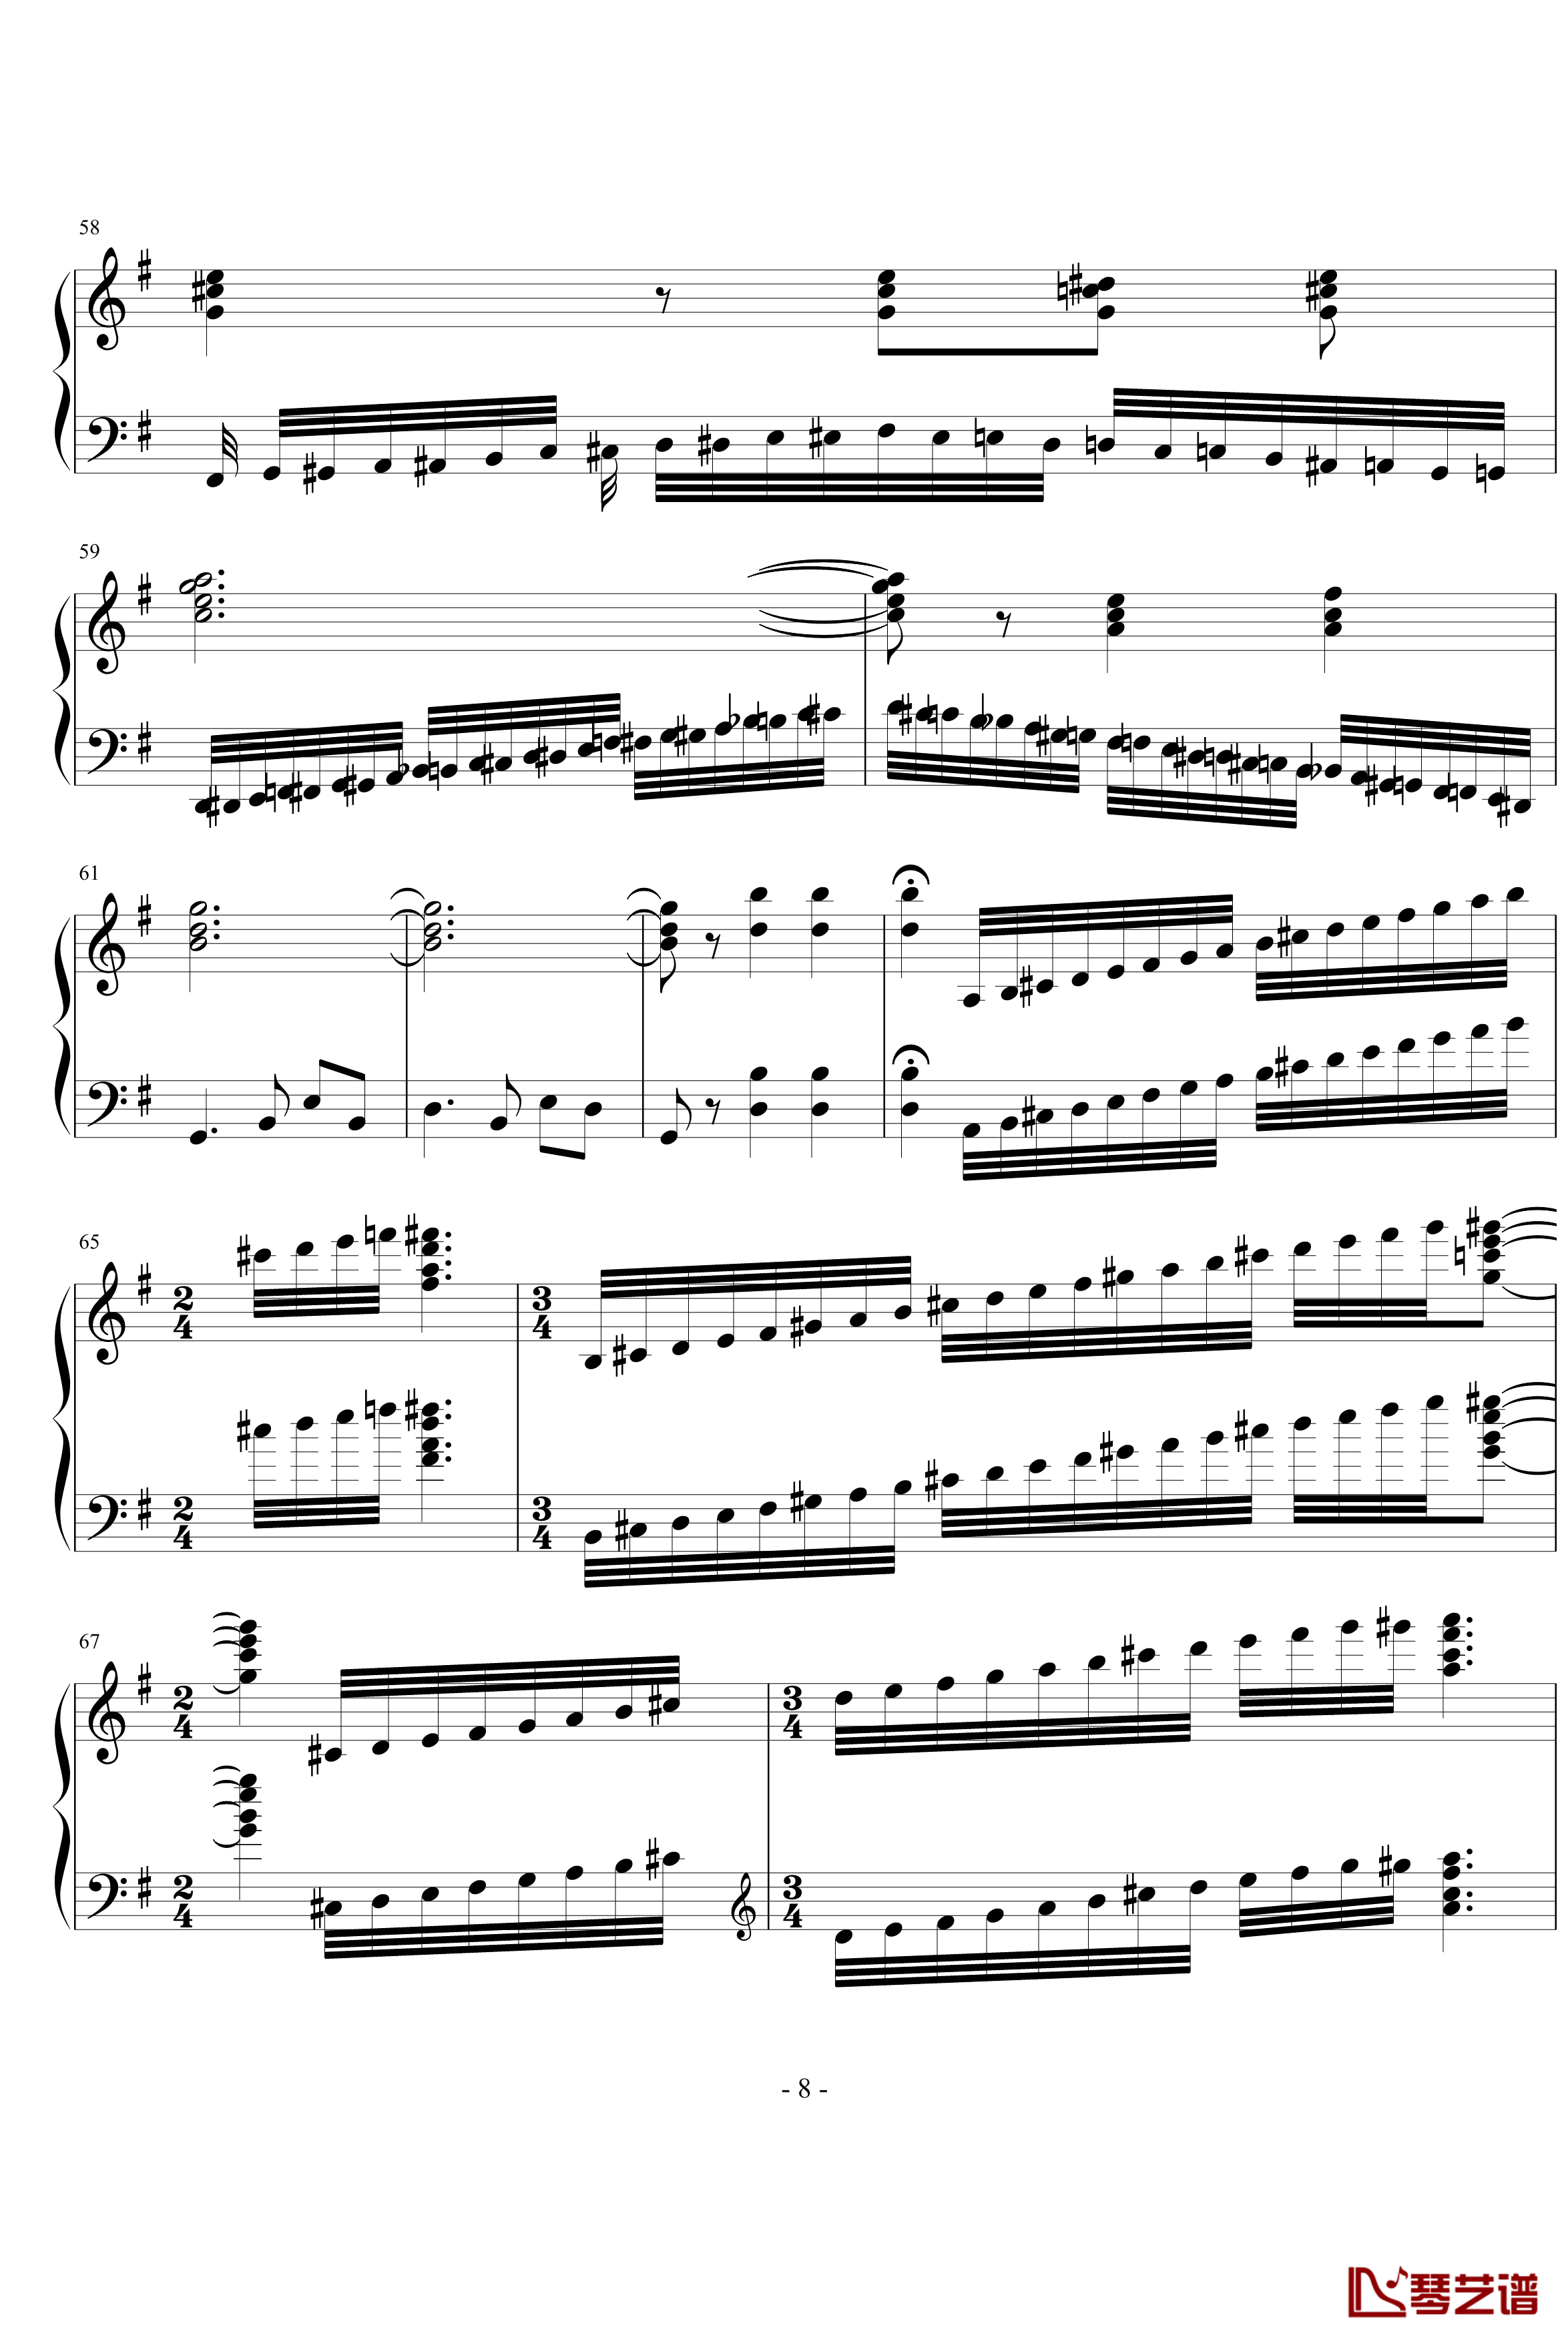 卡门幻想曲钢琴谱-世界名曲